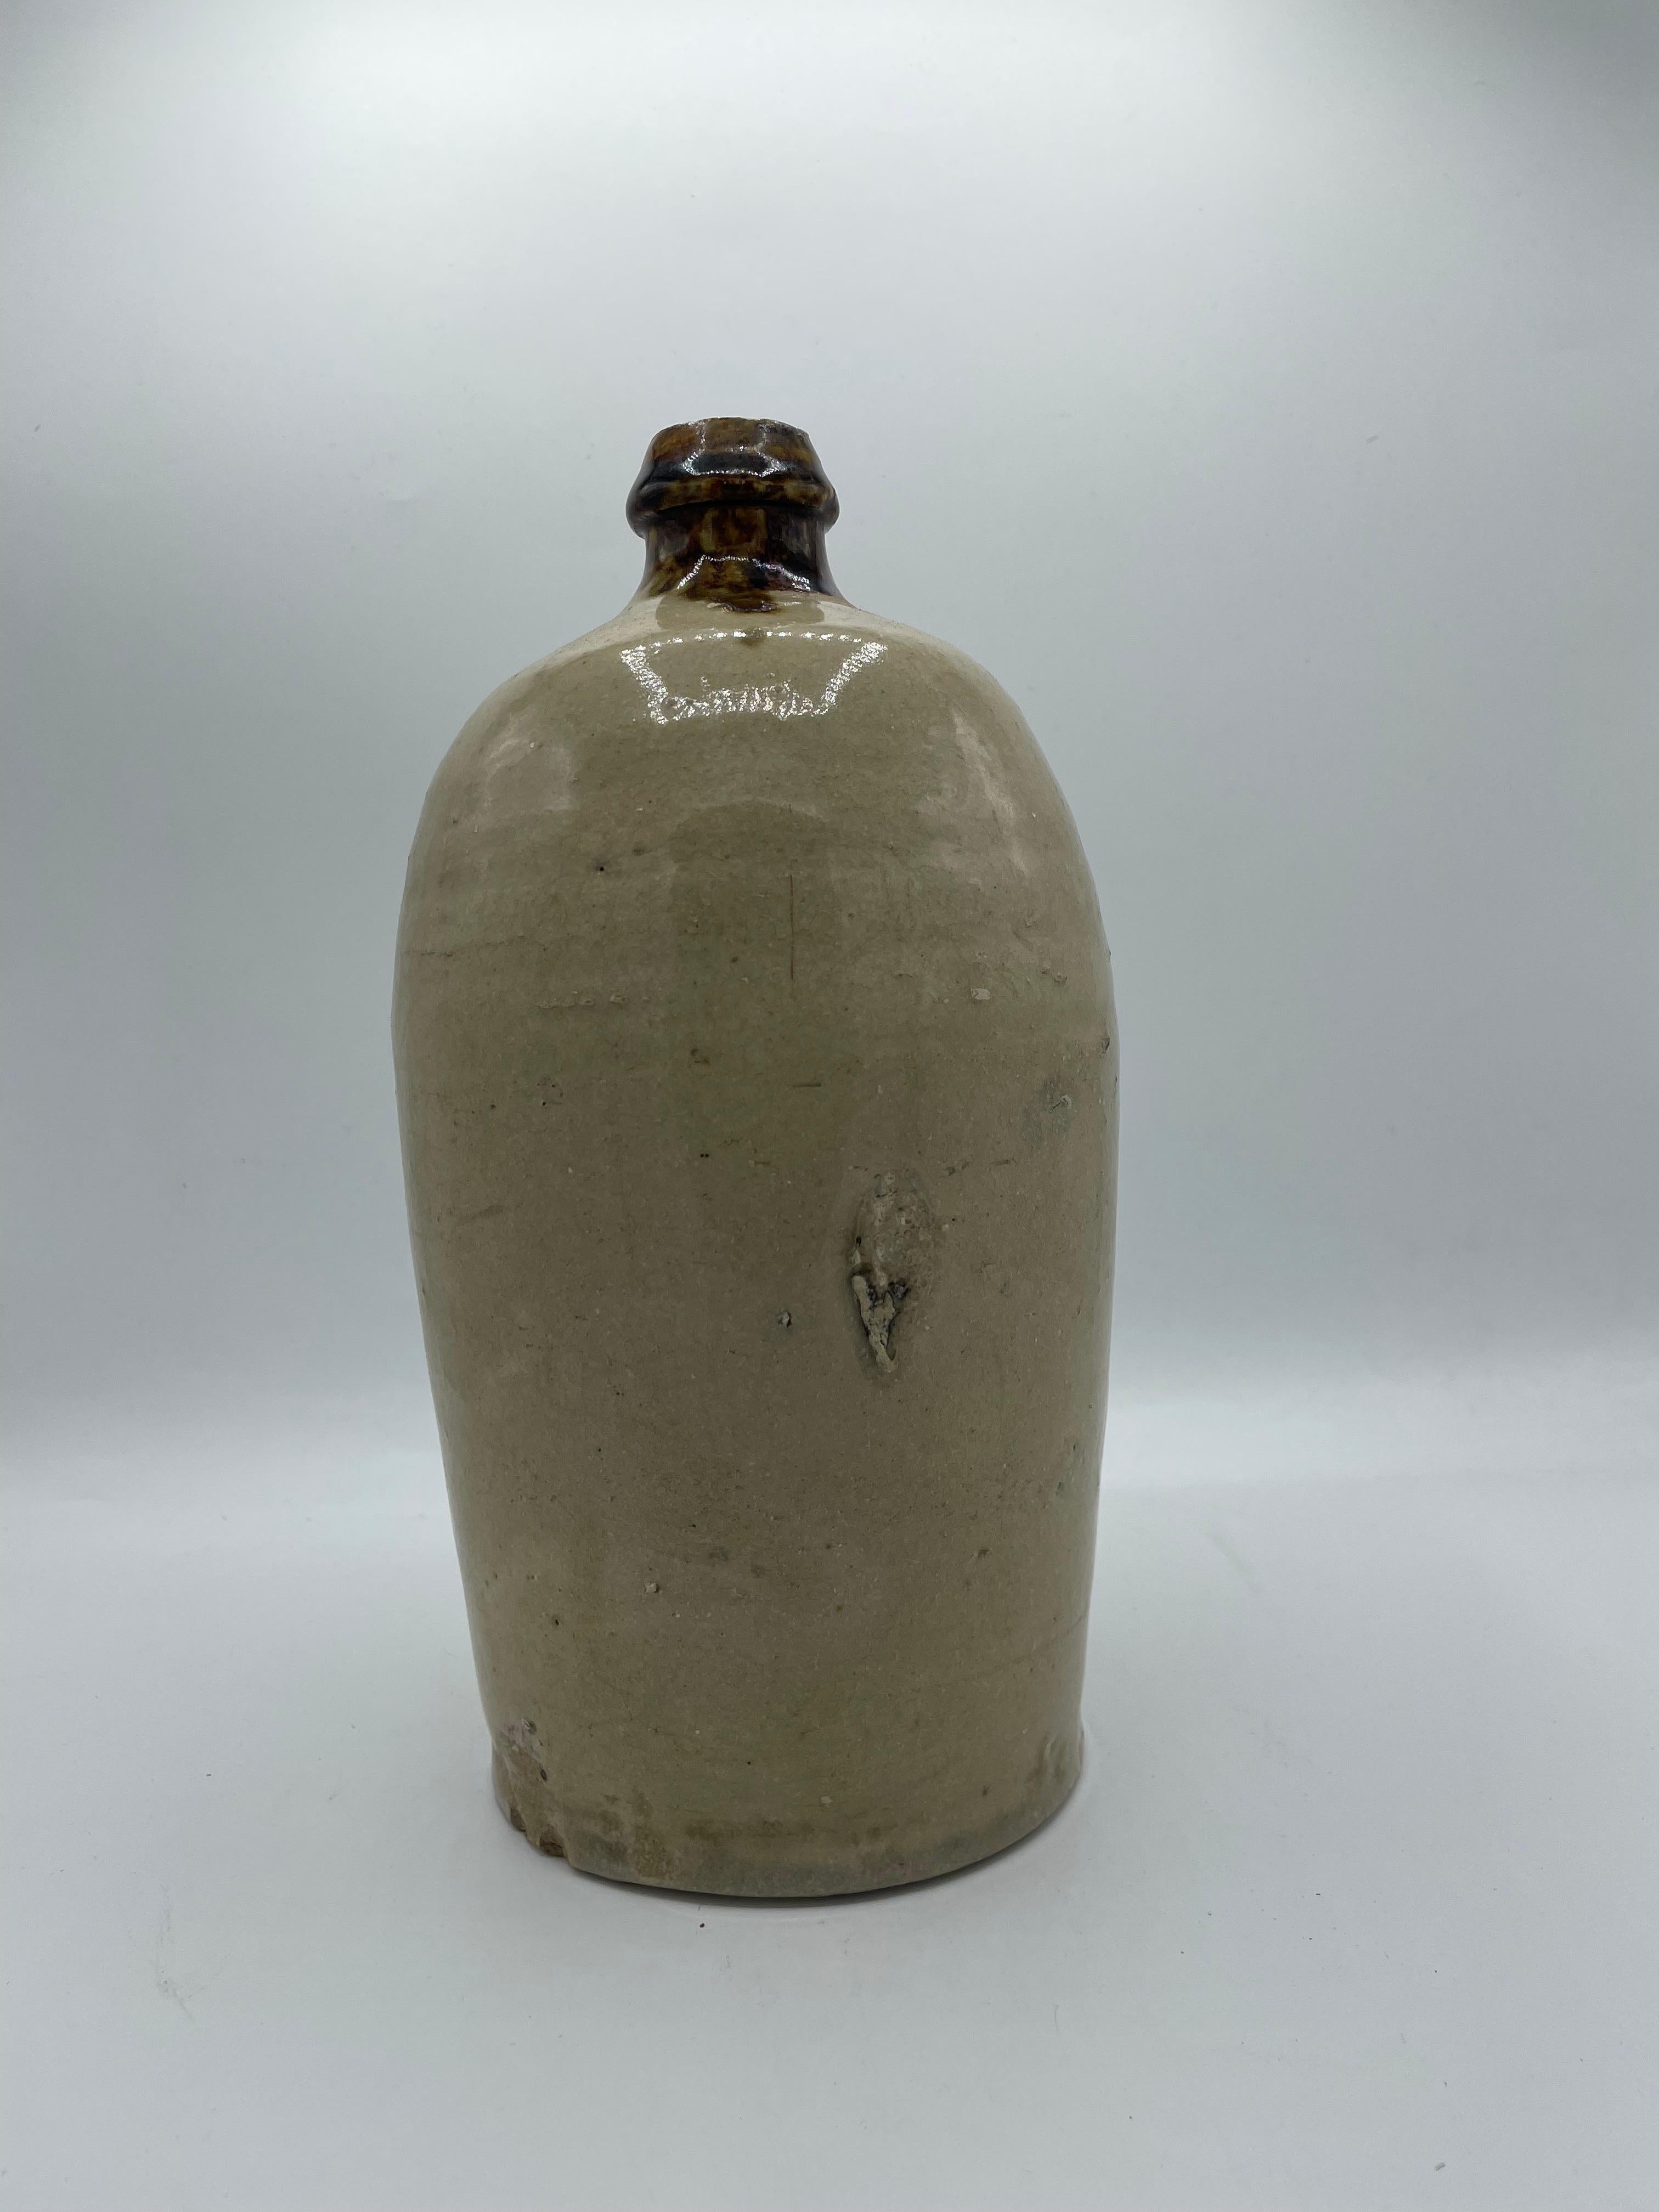 Il s'agit d'une bouteille que les gens utilisaient pour transporter du saké ou de la sauce soja.
Elle est en porcelaine et a été fabriquée vers 1960 à l'époque de Showa. 
Il peut être utilisé comme vase à fleurs ou comme décoration.

Dimensions